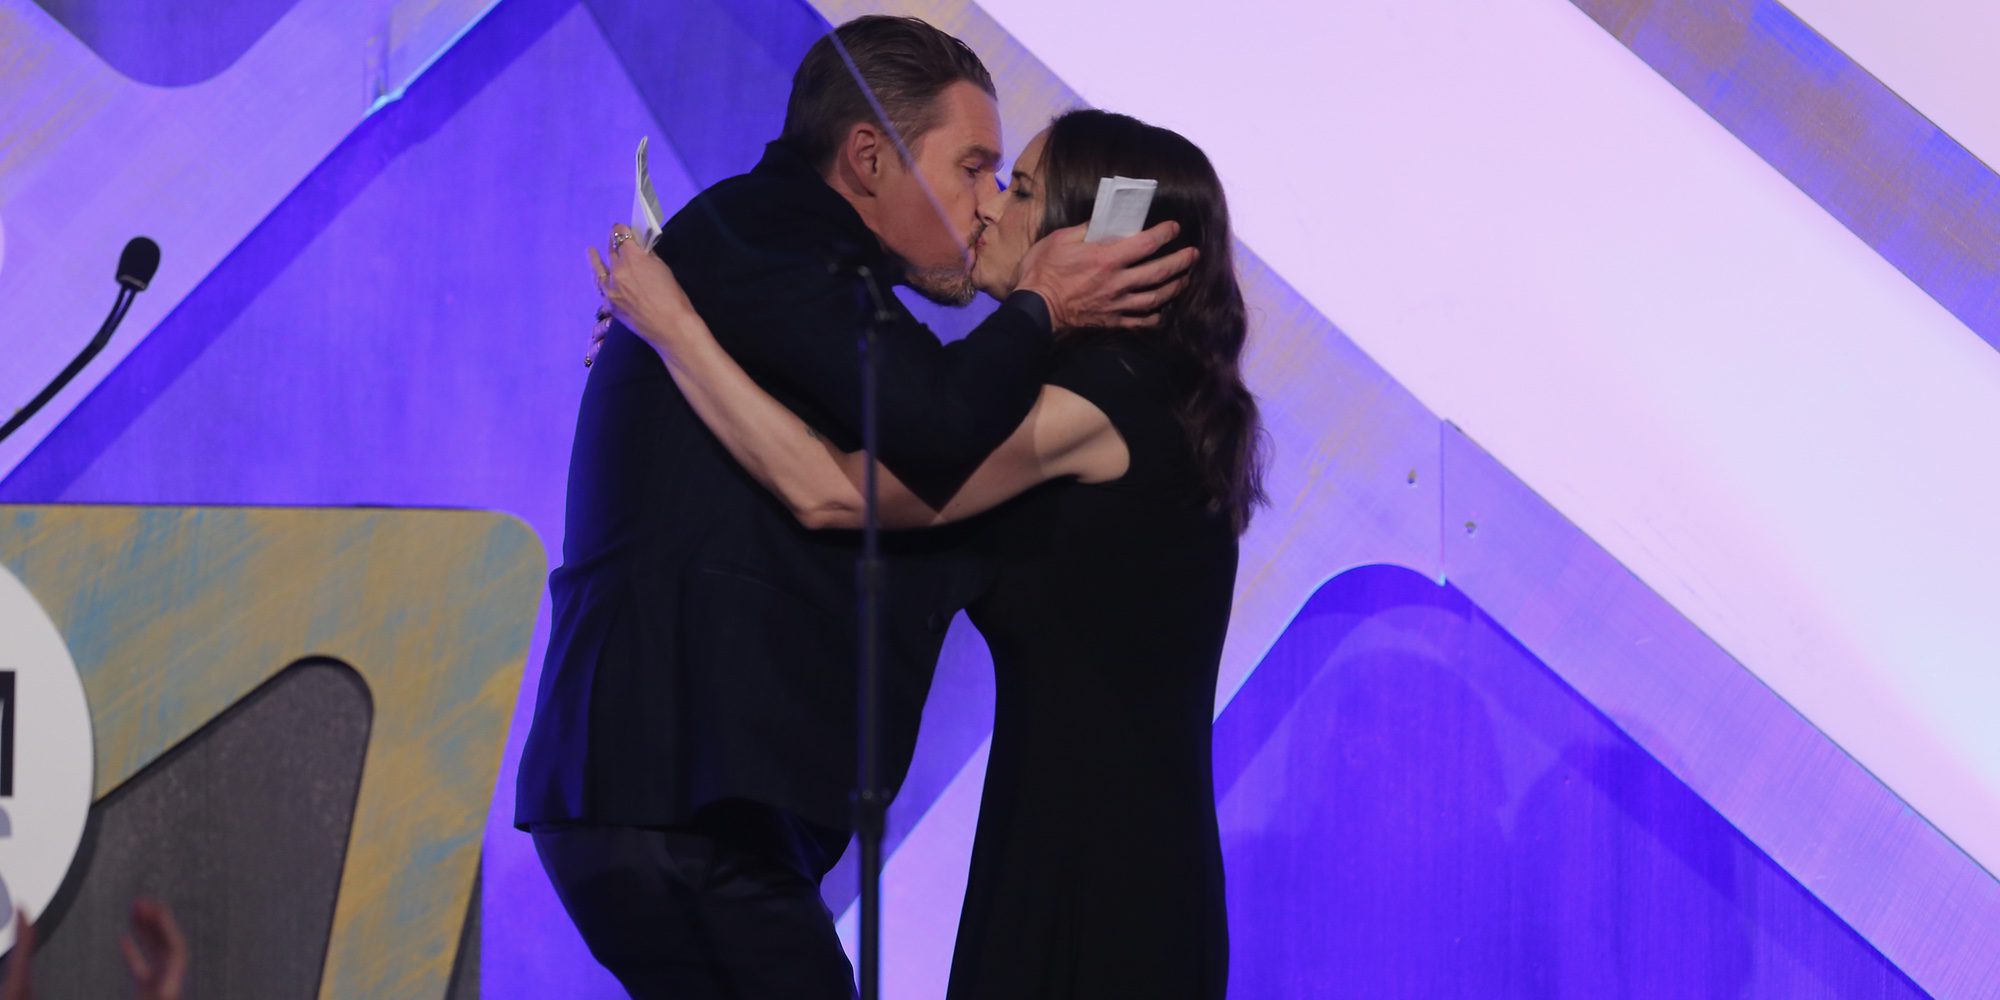 El beso entre Winona Ryder y Ethan Hawke en los Premios Gotham 2016